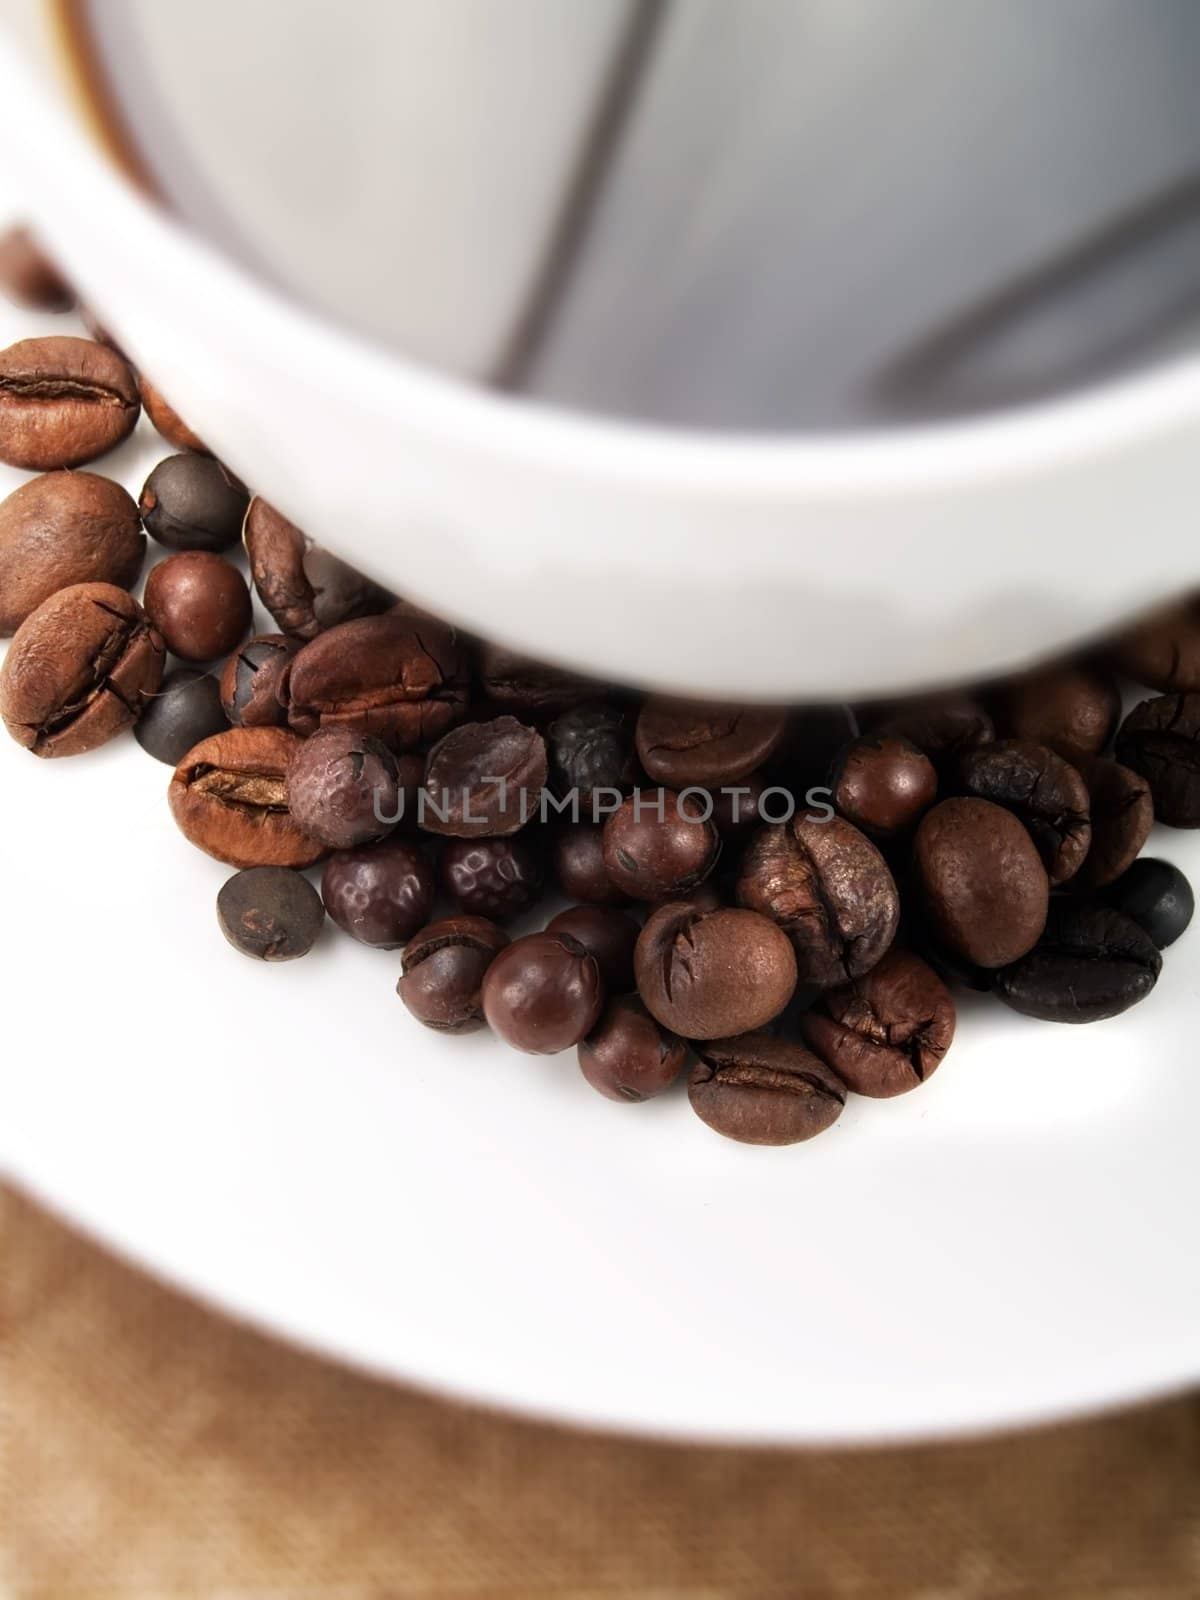 Coffee beans by henrischmit